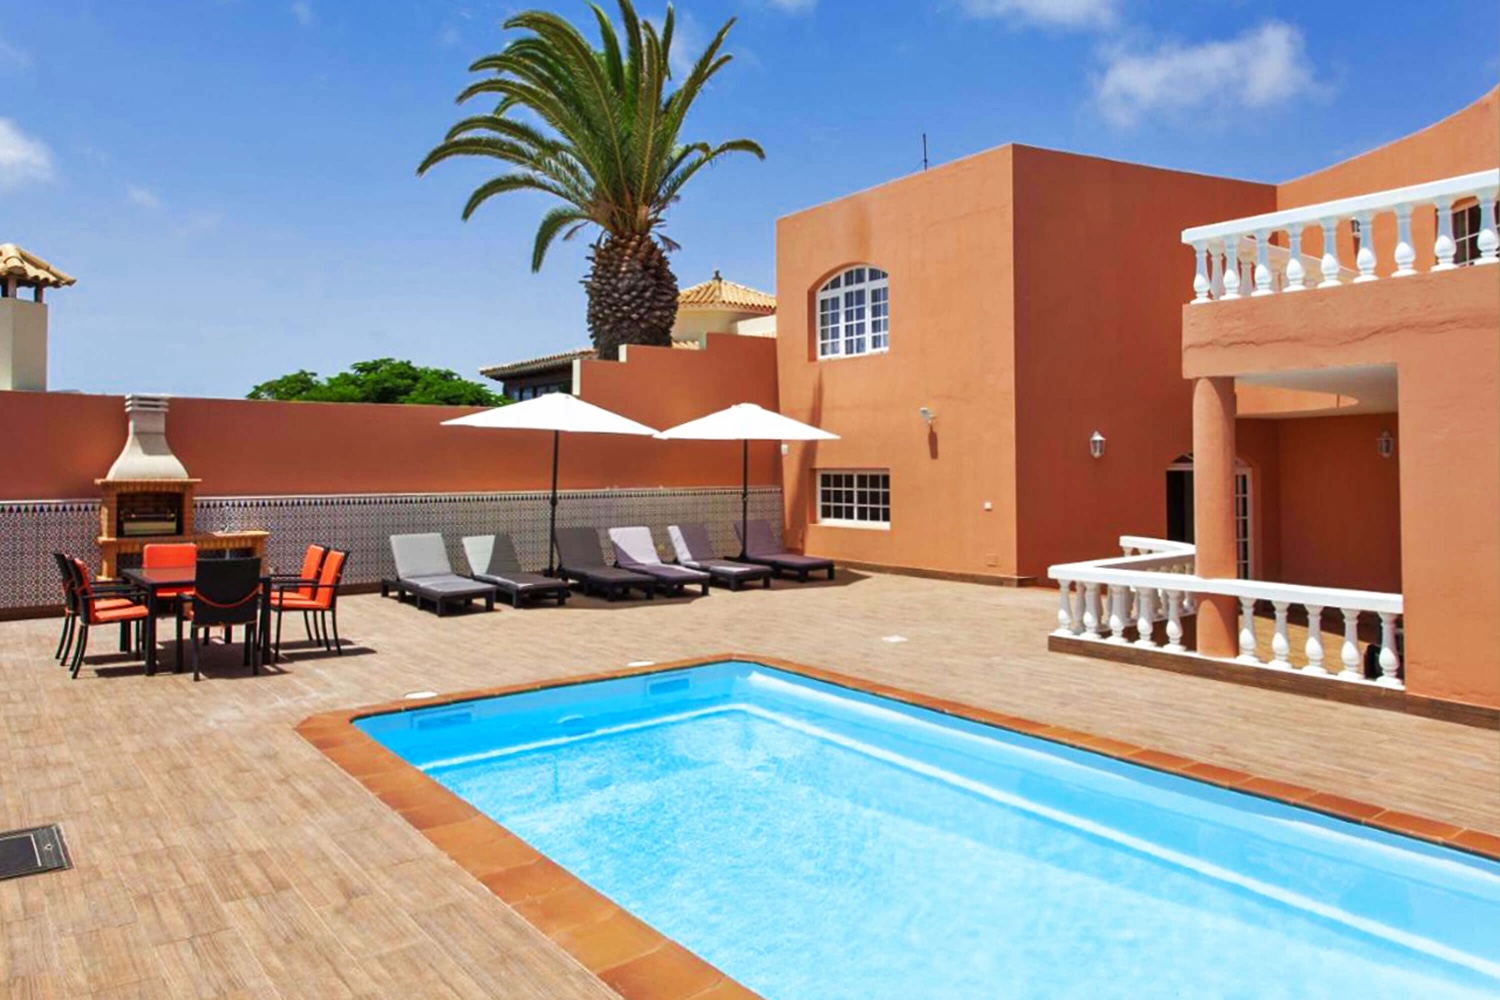 Maison de vacances moderne avec piscine privée pour des vacances reposantes à la plage à Caleta de Fuste